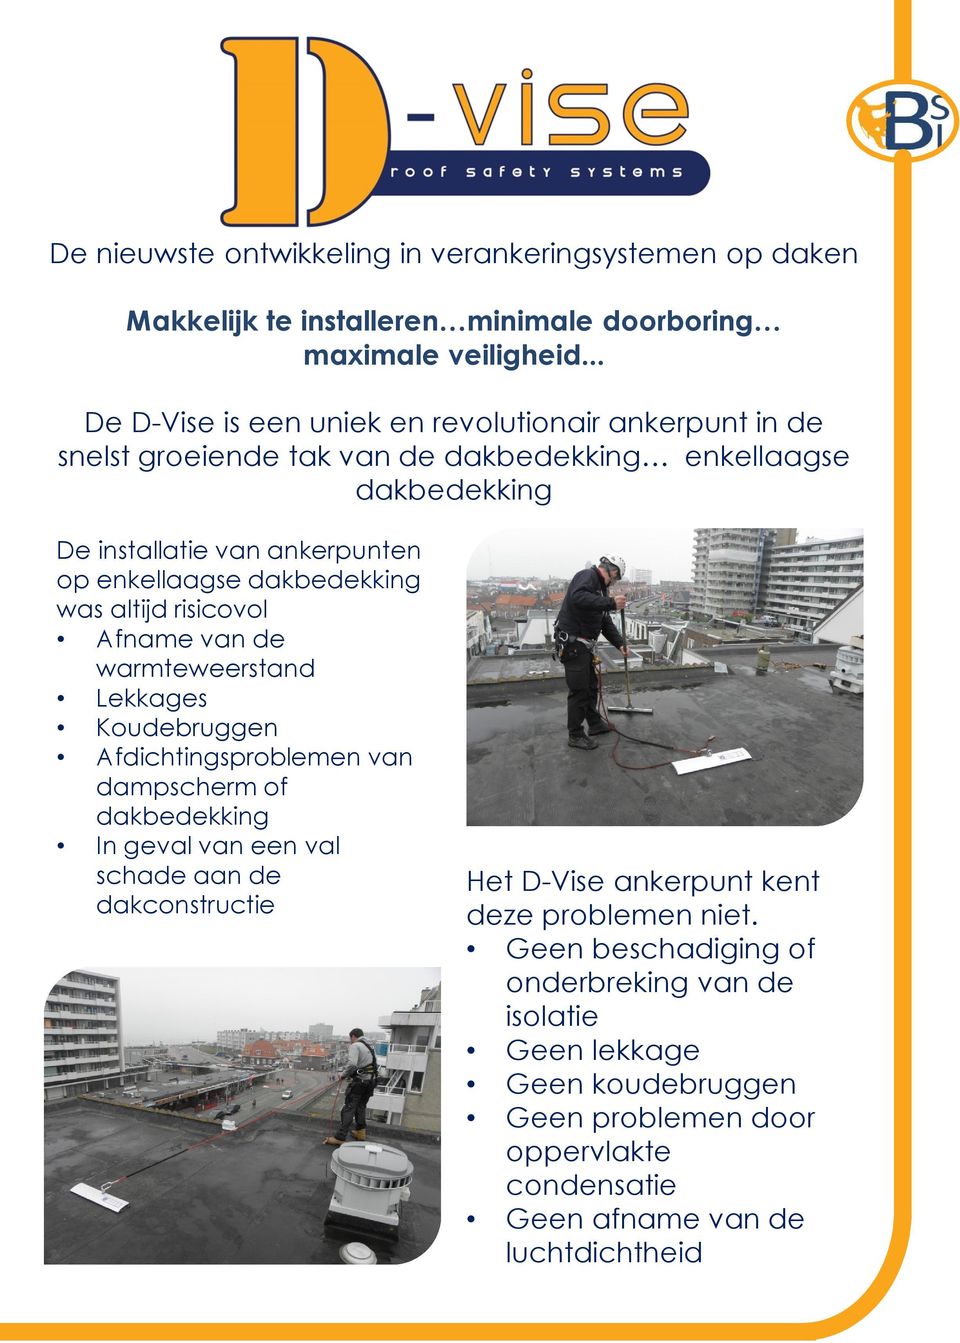 dakbedekking was altijd risicovol Afname van de warmteweerstand Lekkages Koudebruggen Afdichtingsproblemen van dampscherm of dakbedekking In geval van een val schade aan